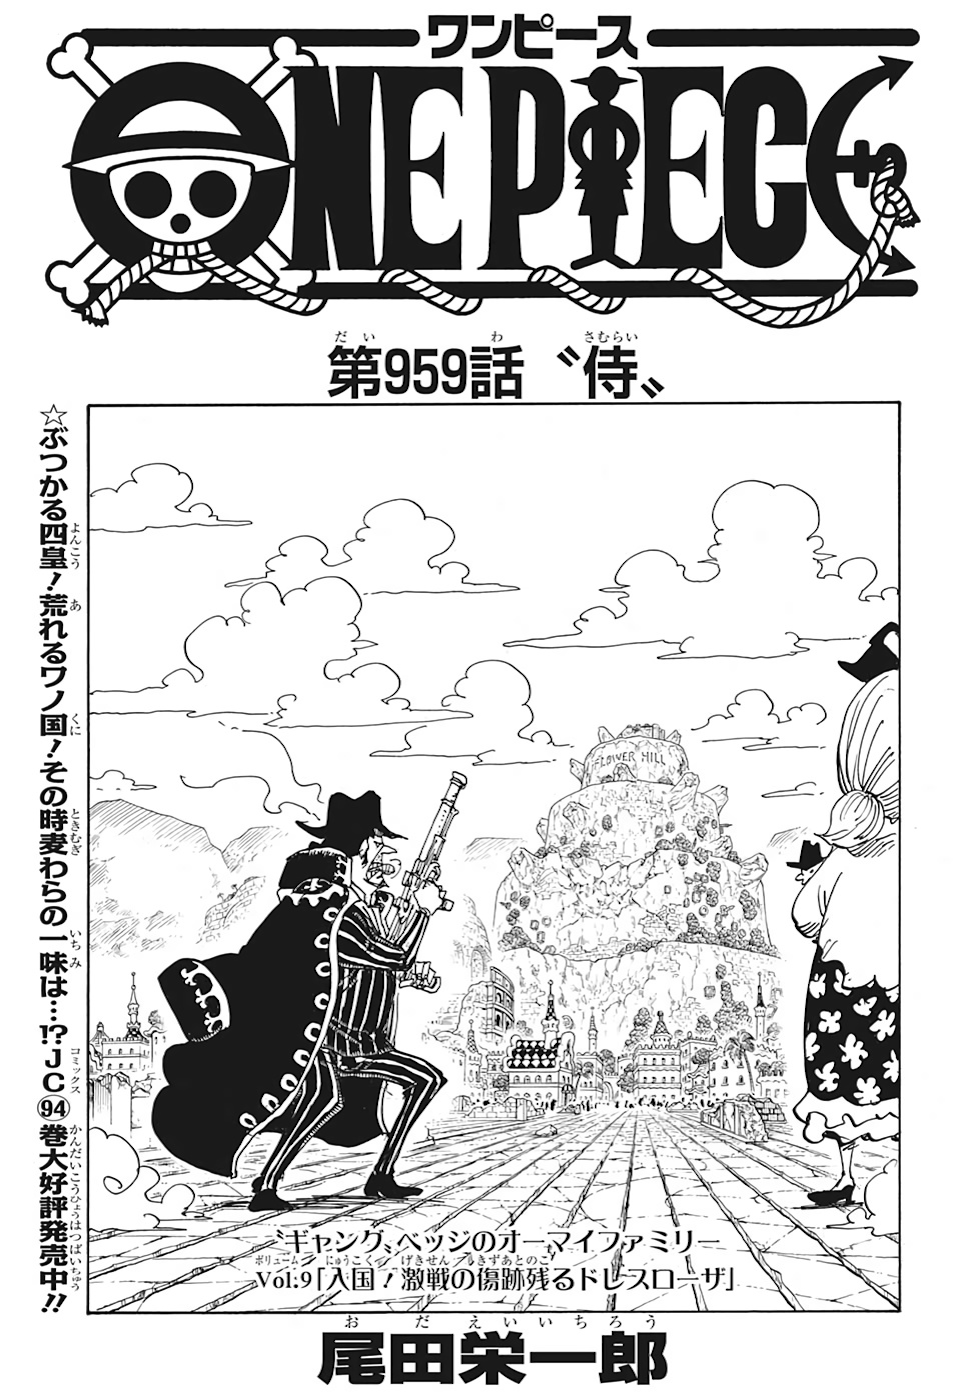 画像 One Piece Manga 959 ハイキュー ネタバレ